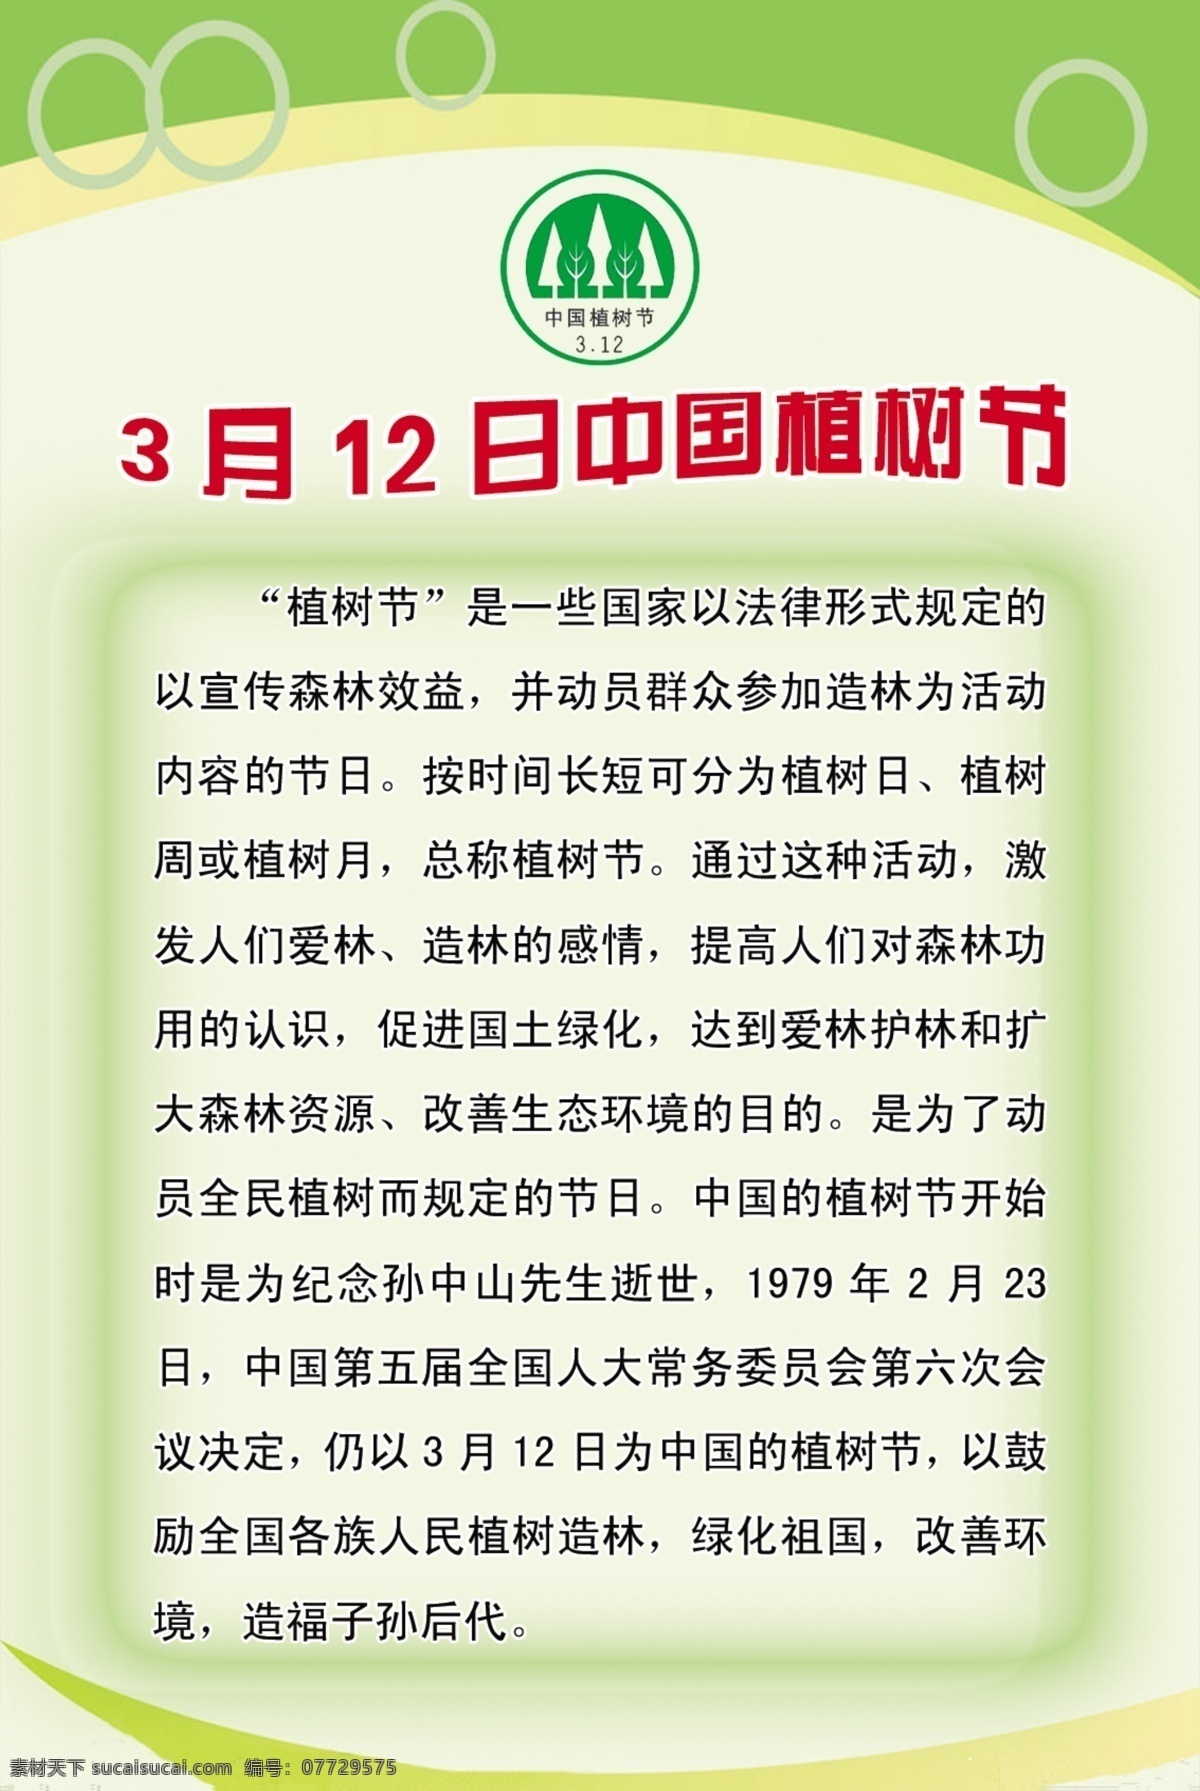 中国 植树节 边框 广告设计模板 浅绿色背景 圈圈 源文件 展板模板 植树节标志 3月12日 节日素材 其他节日